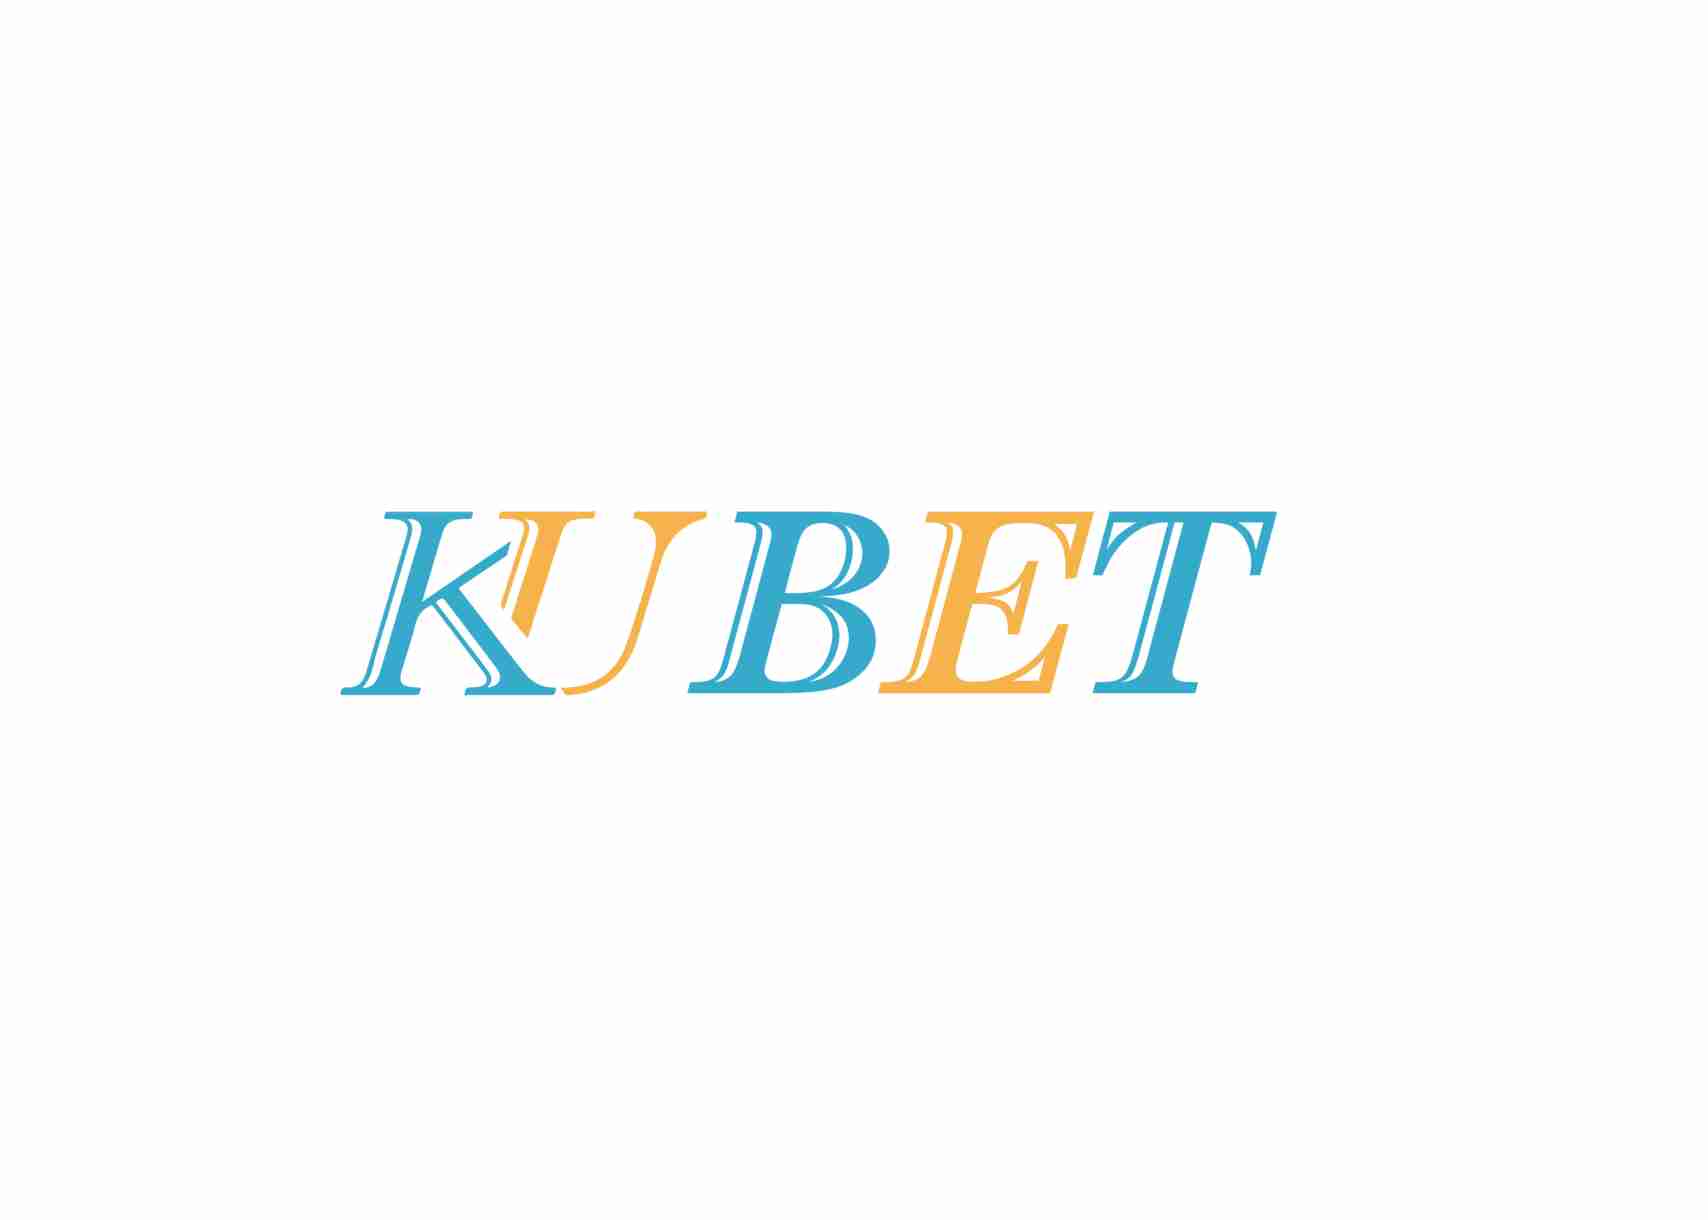 kubet feedback